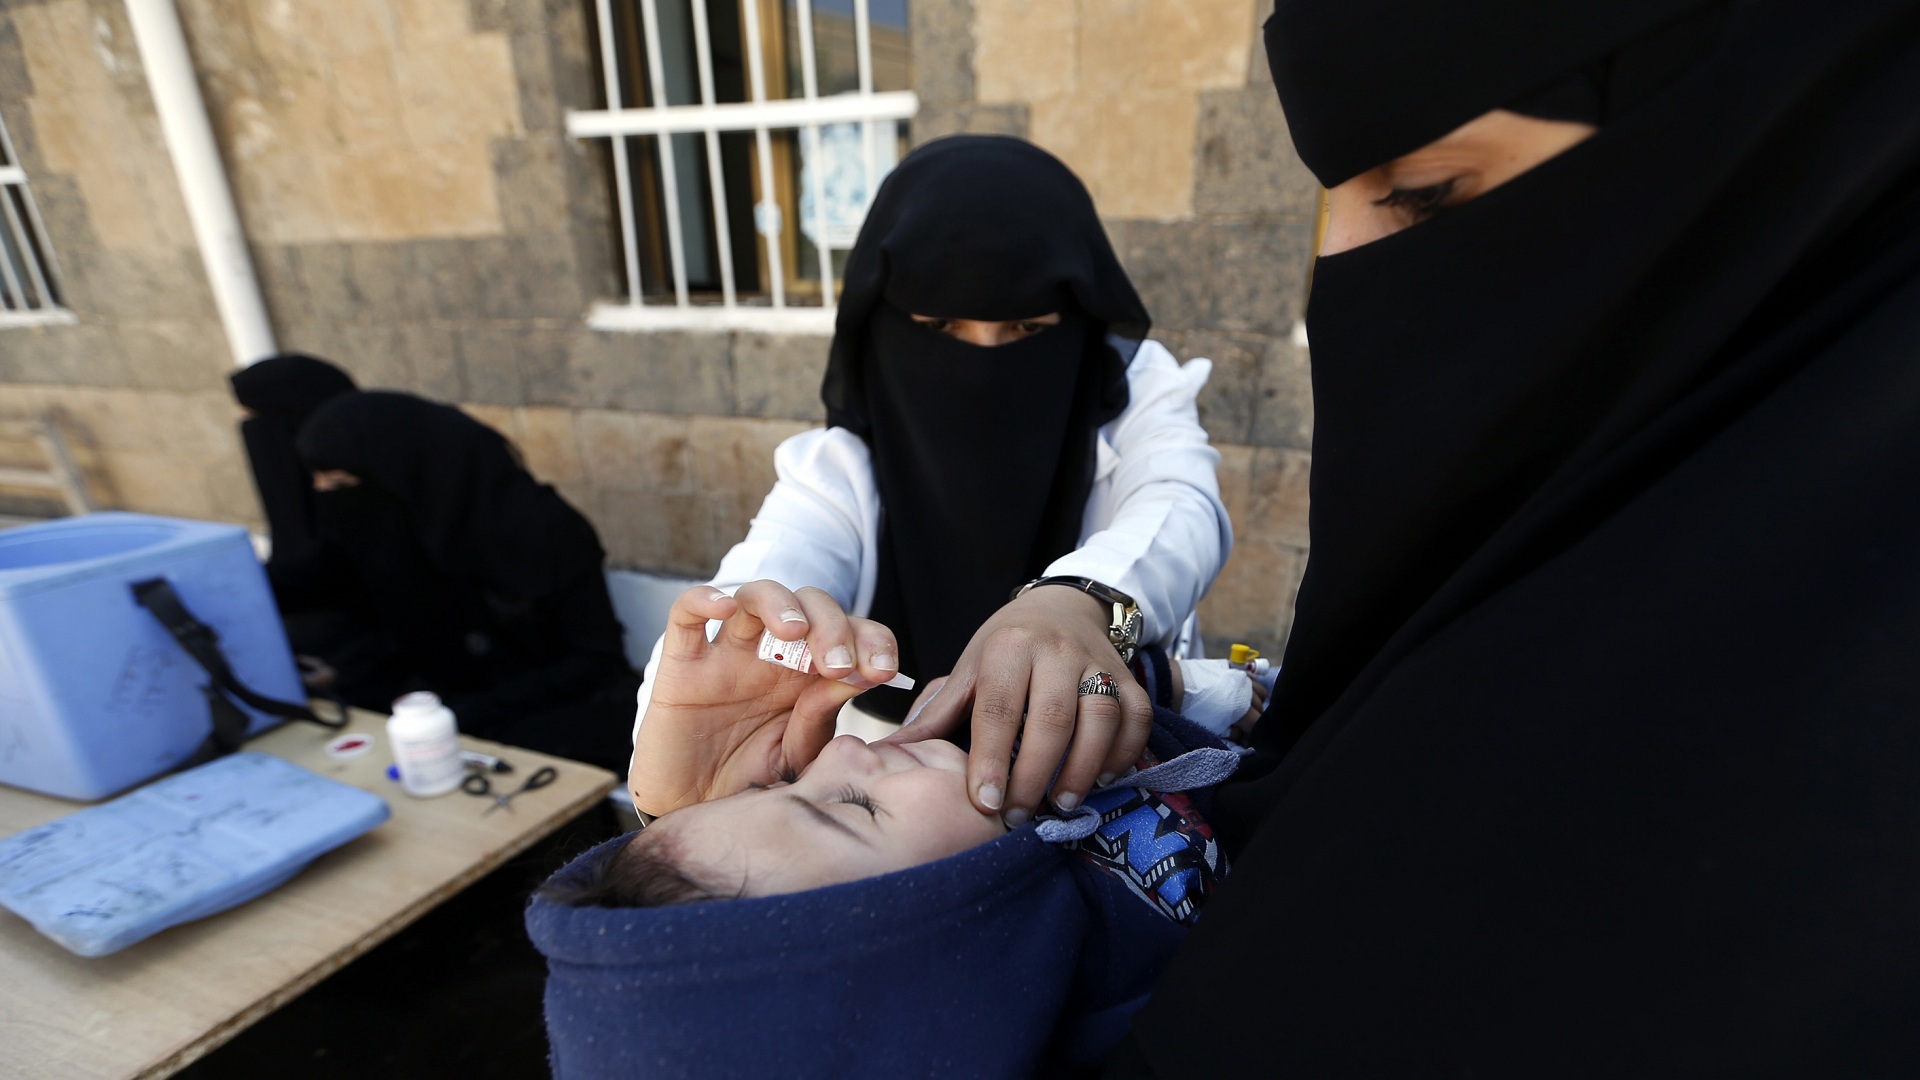 وزير الصحة: شلل الأطفال عاد للظهور وسلطات الحوثي ما زالت ترفض تنفيذ حملات اللقاح